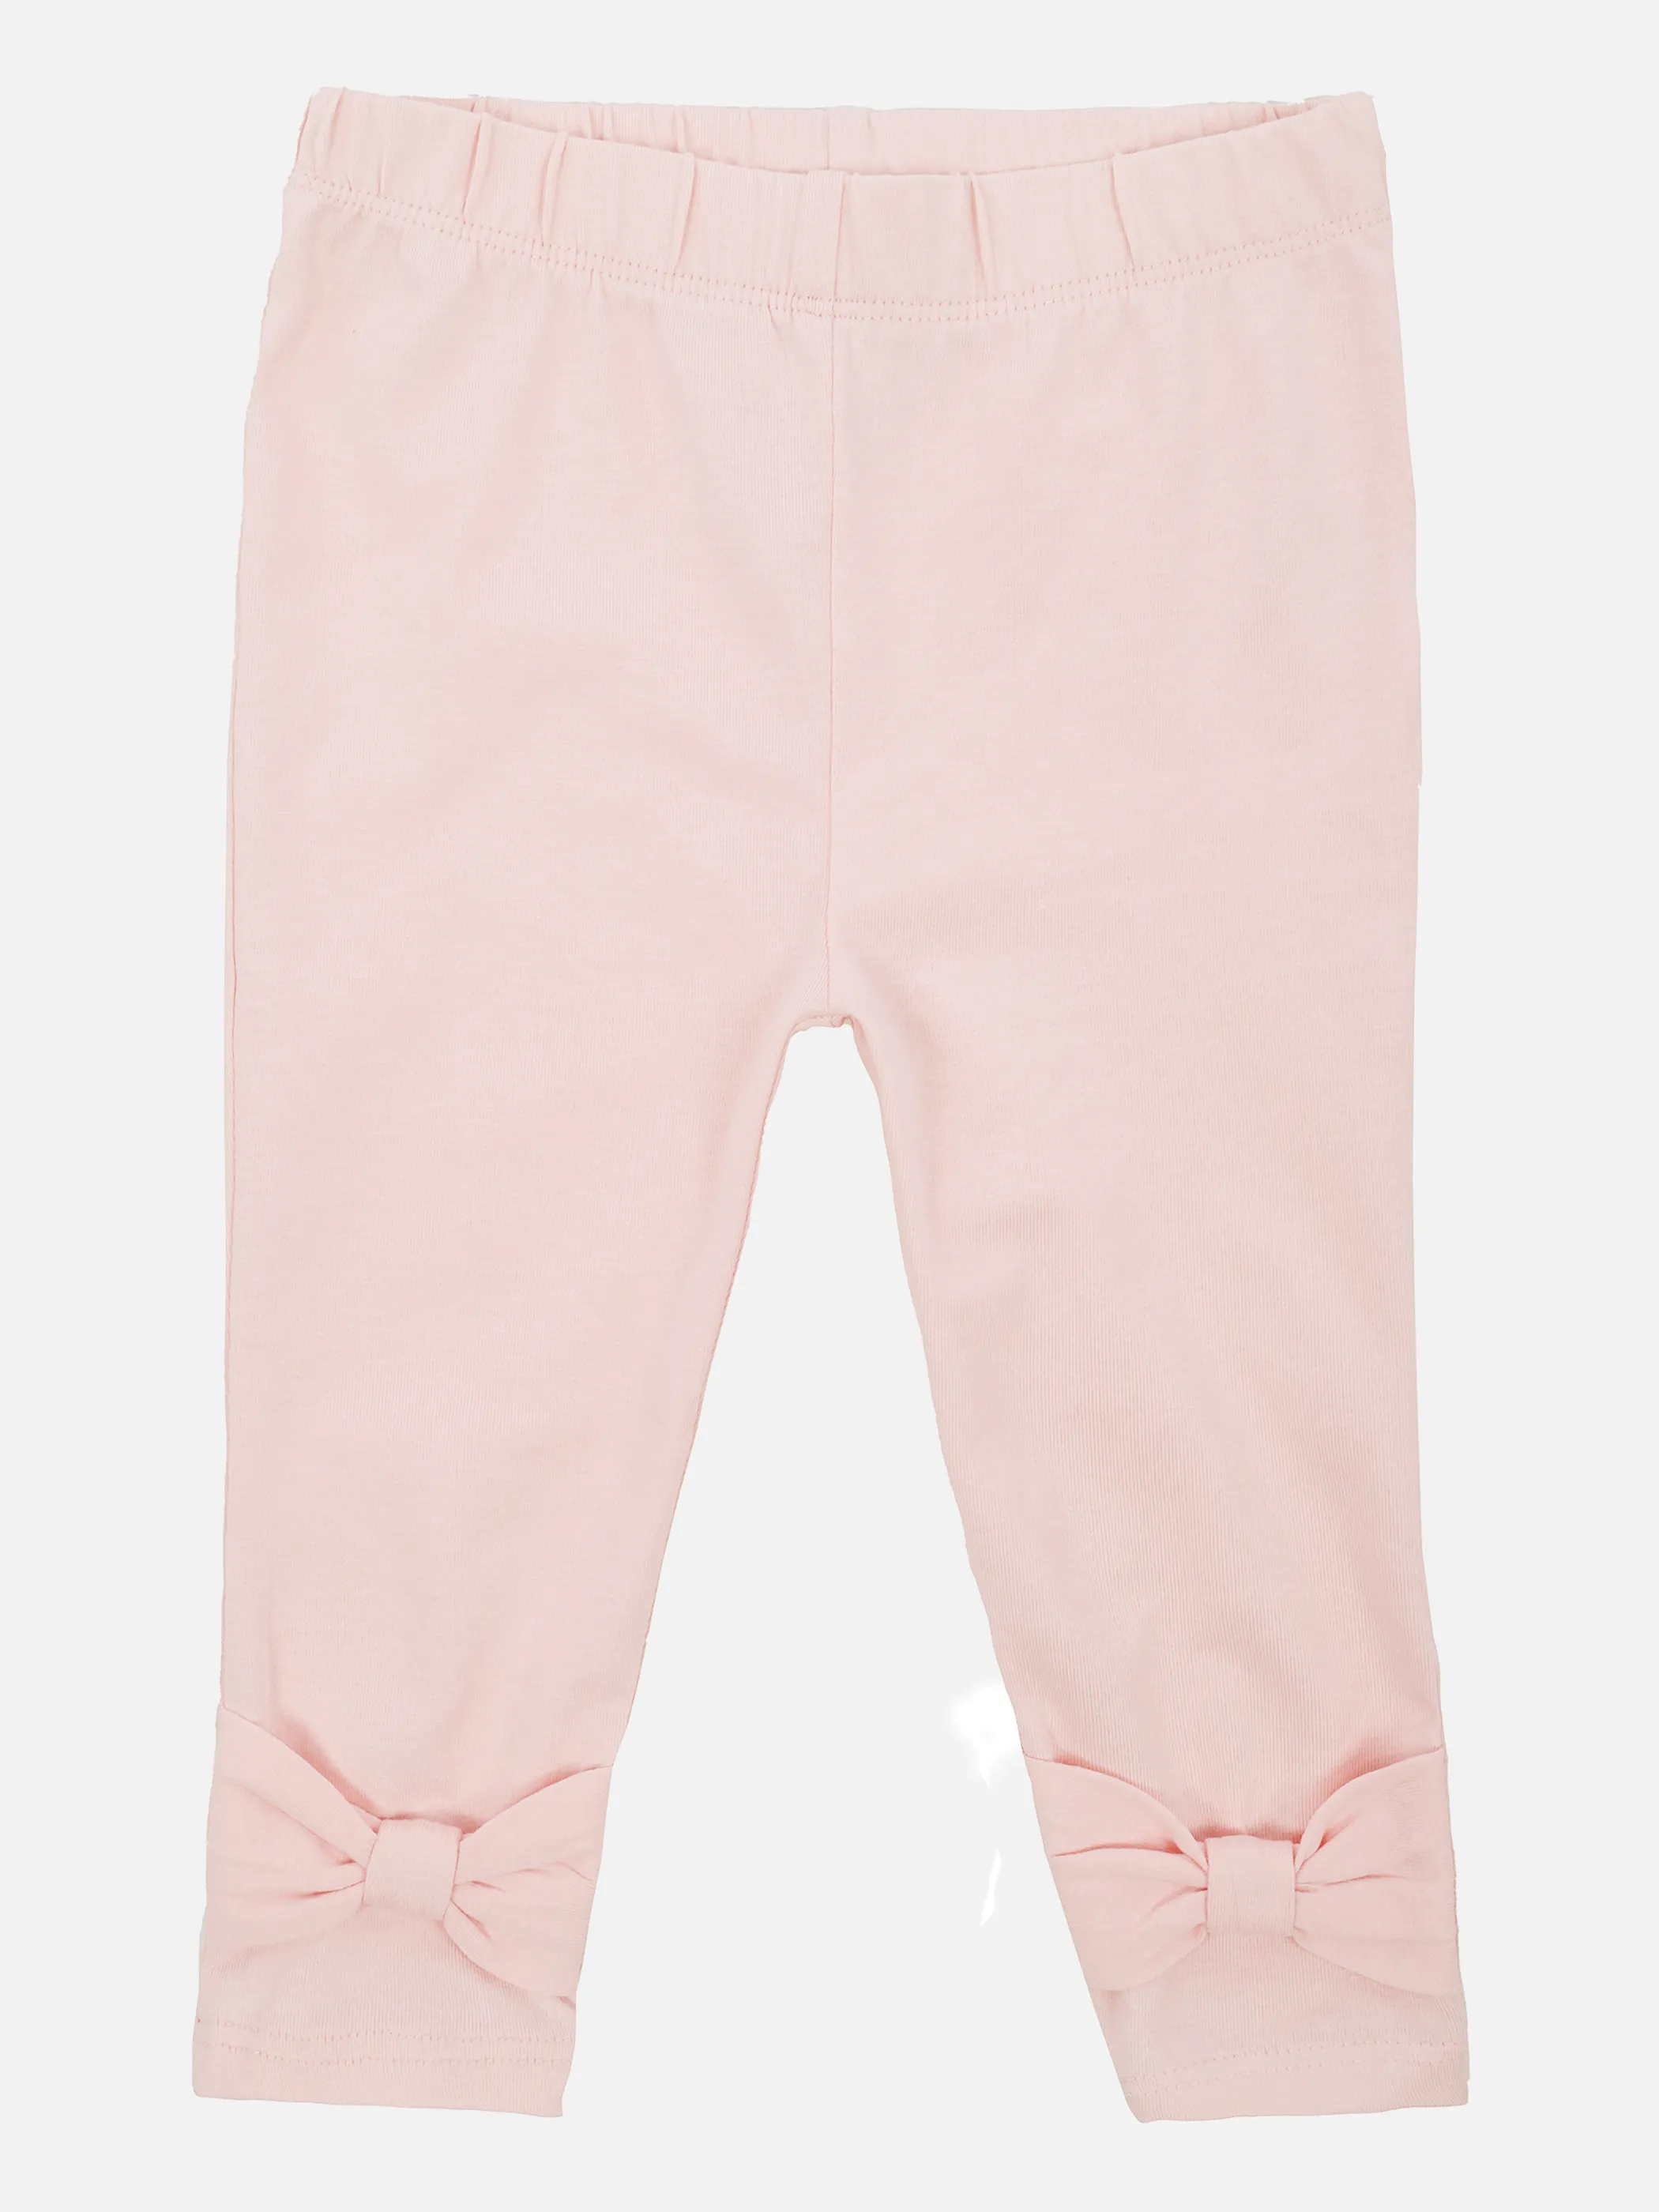 Bubble Gum BG Leggings in uni rosa mit Rosa 860624 ROSA 1